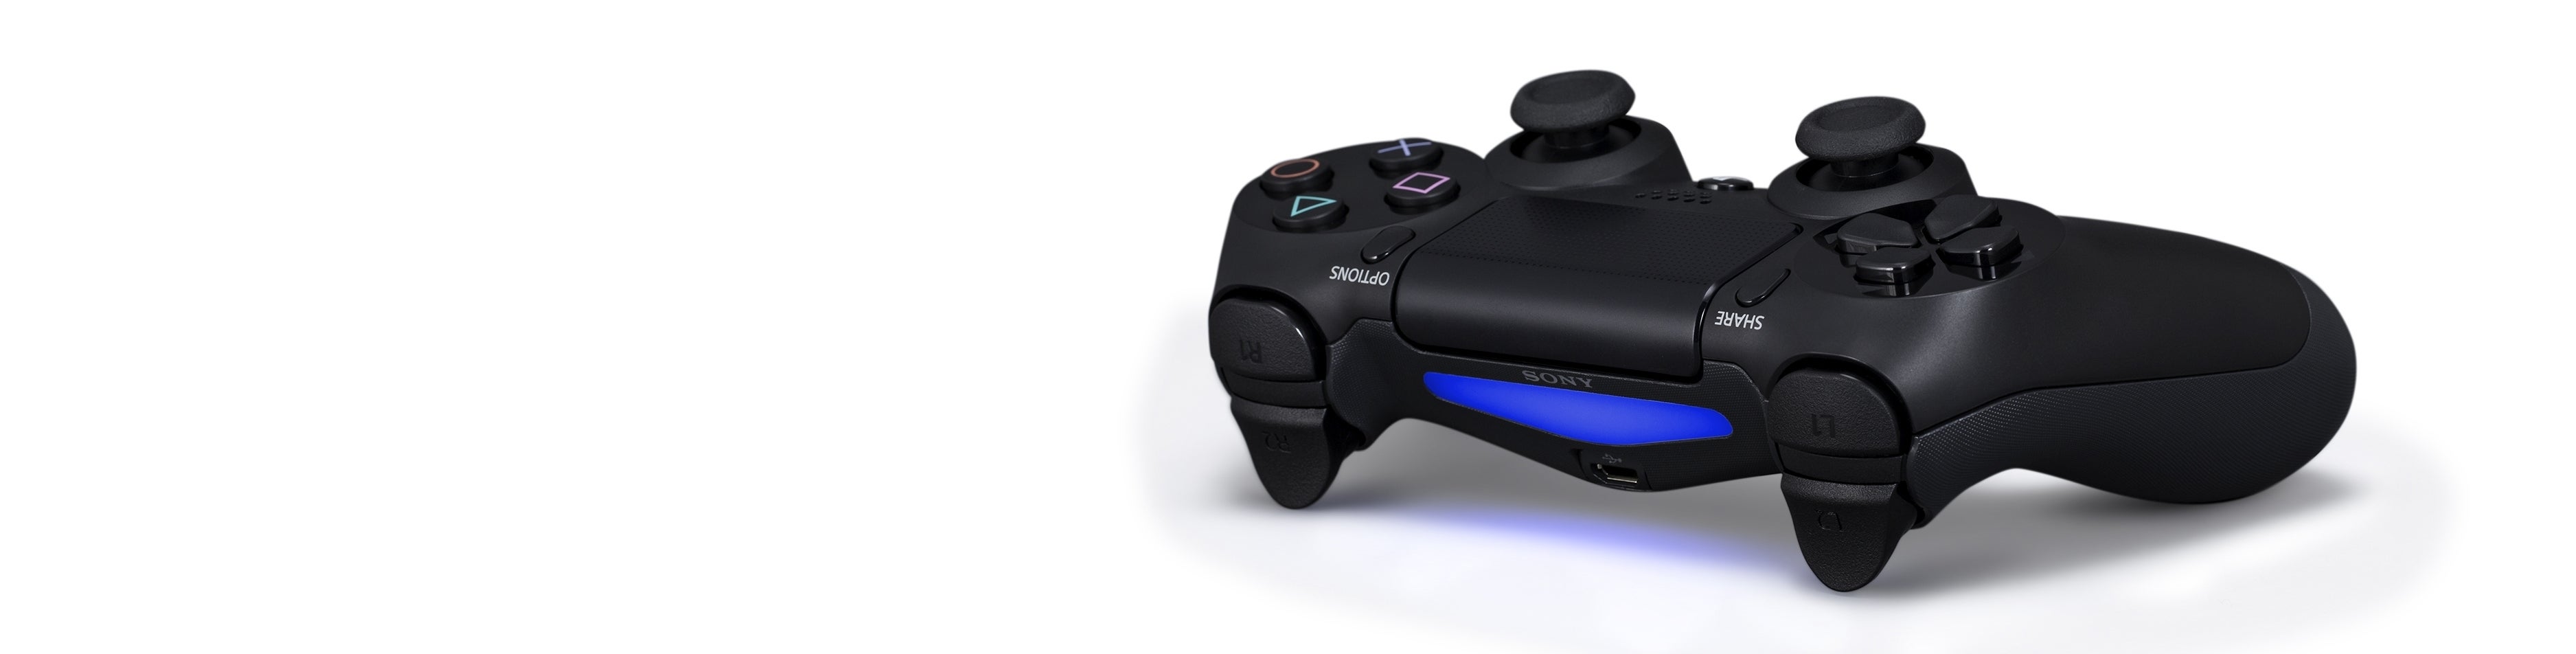 Imagen para PlayStation 4: Las primeras impresiones de Digital Foundry